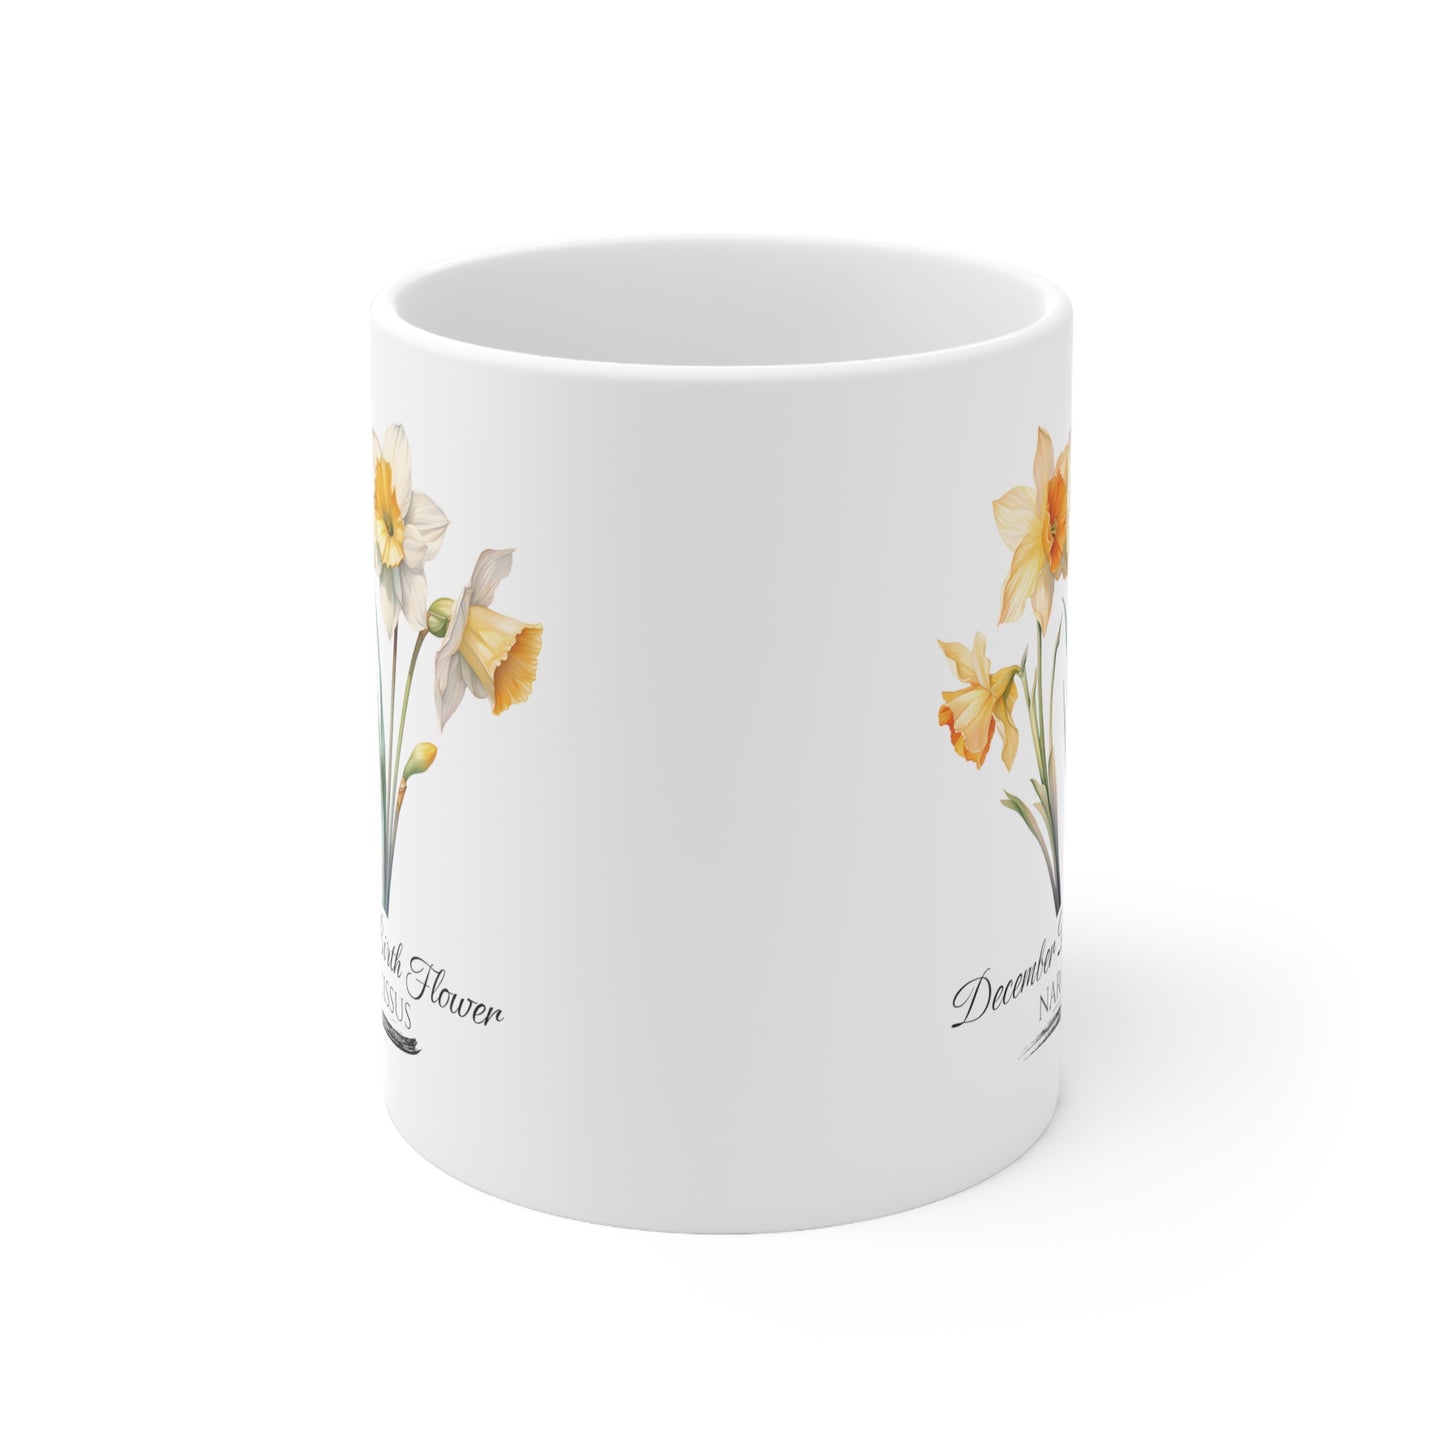 December Birth Flower (Narcissus): Ceramic Mug 11oz